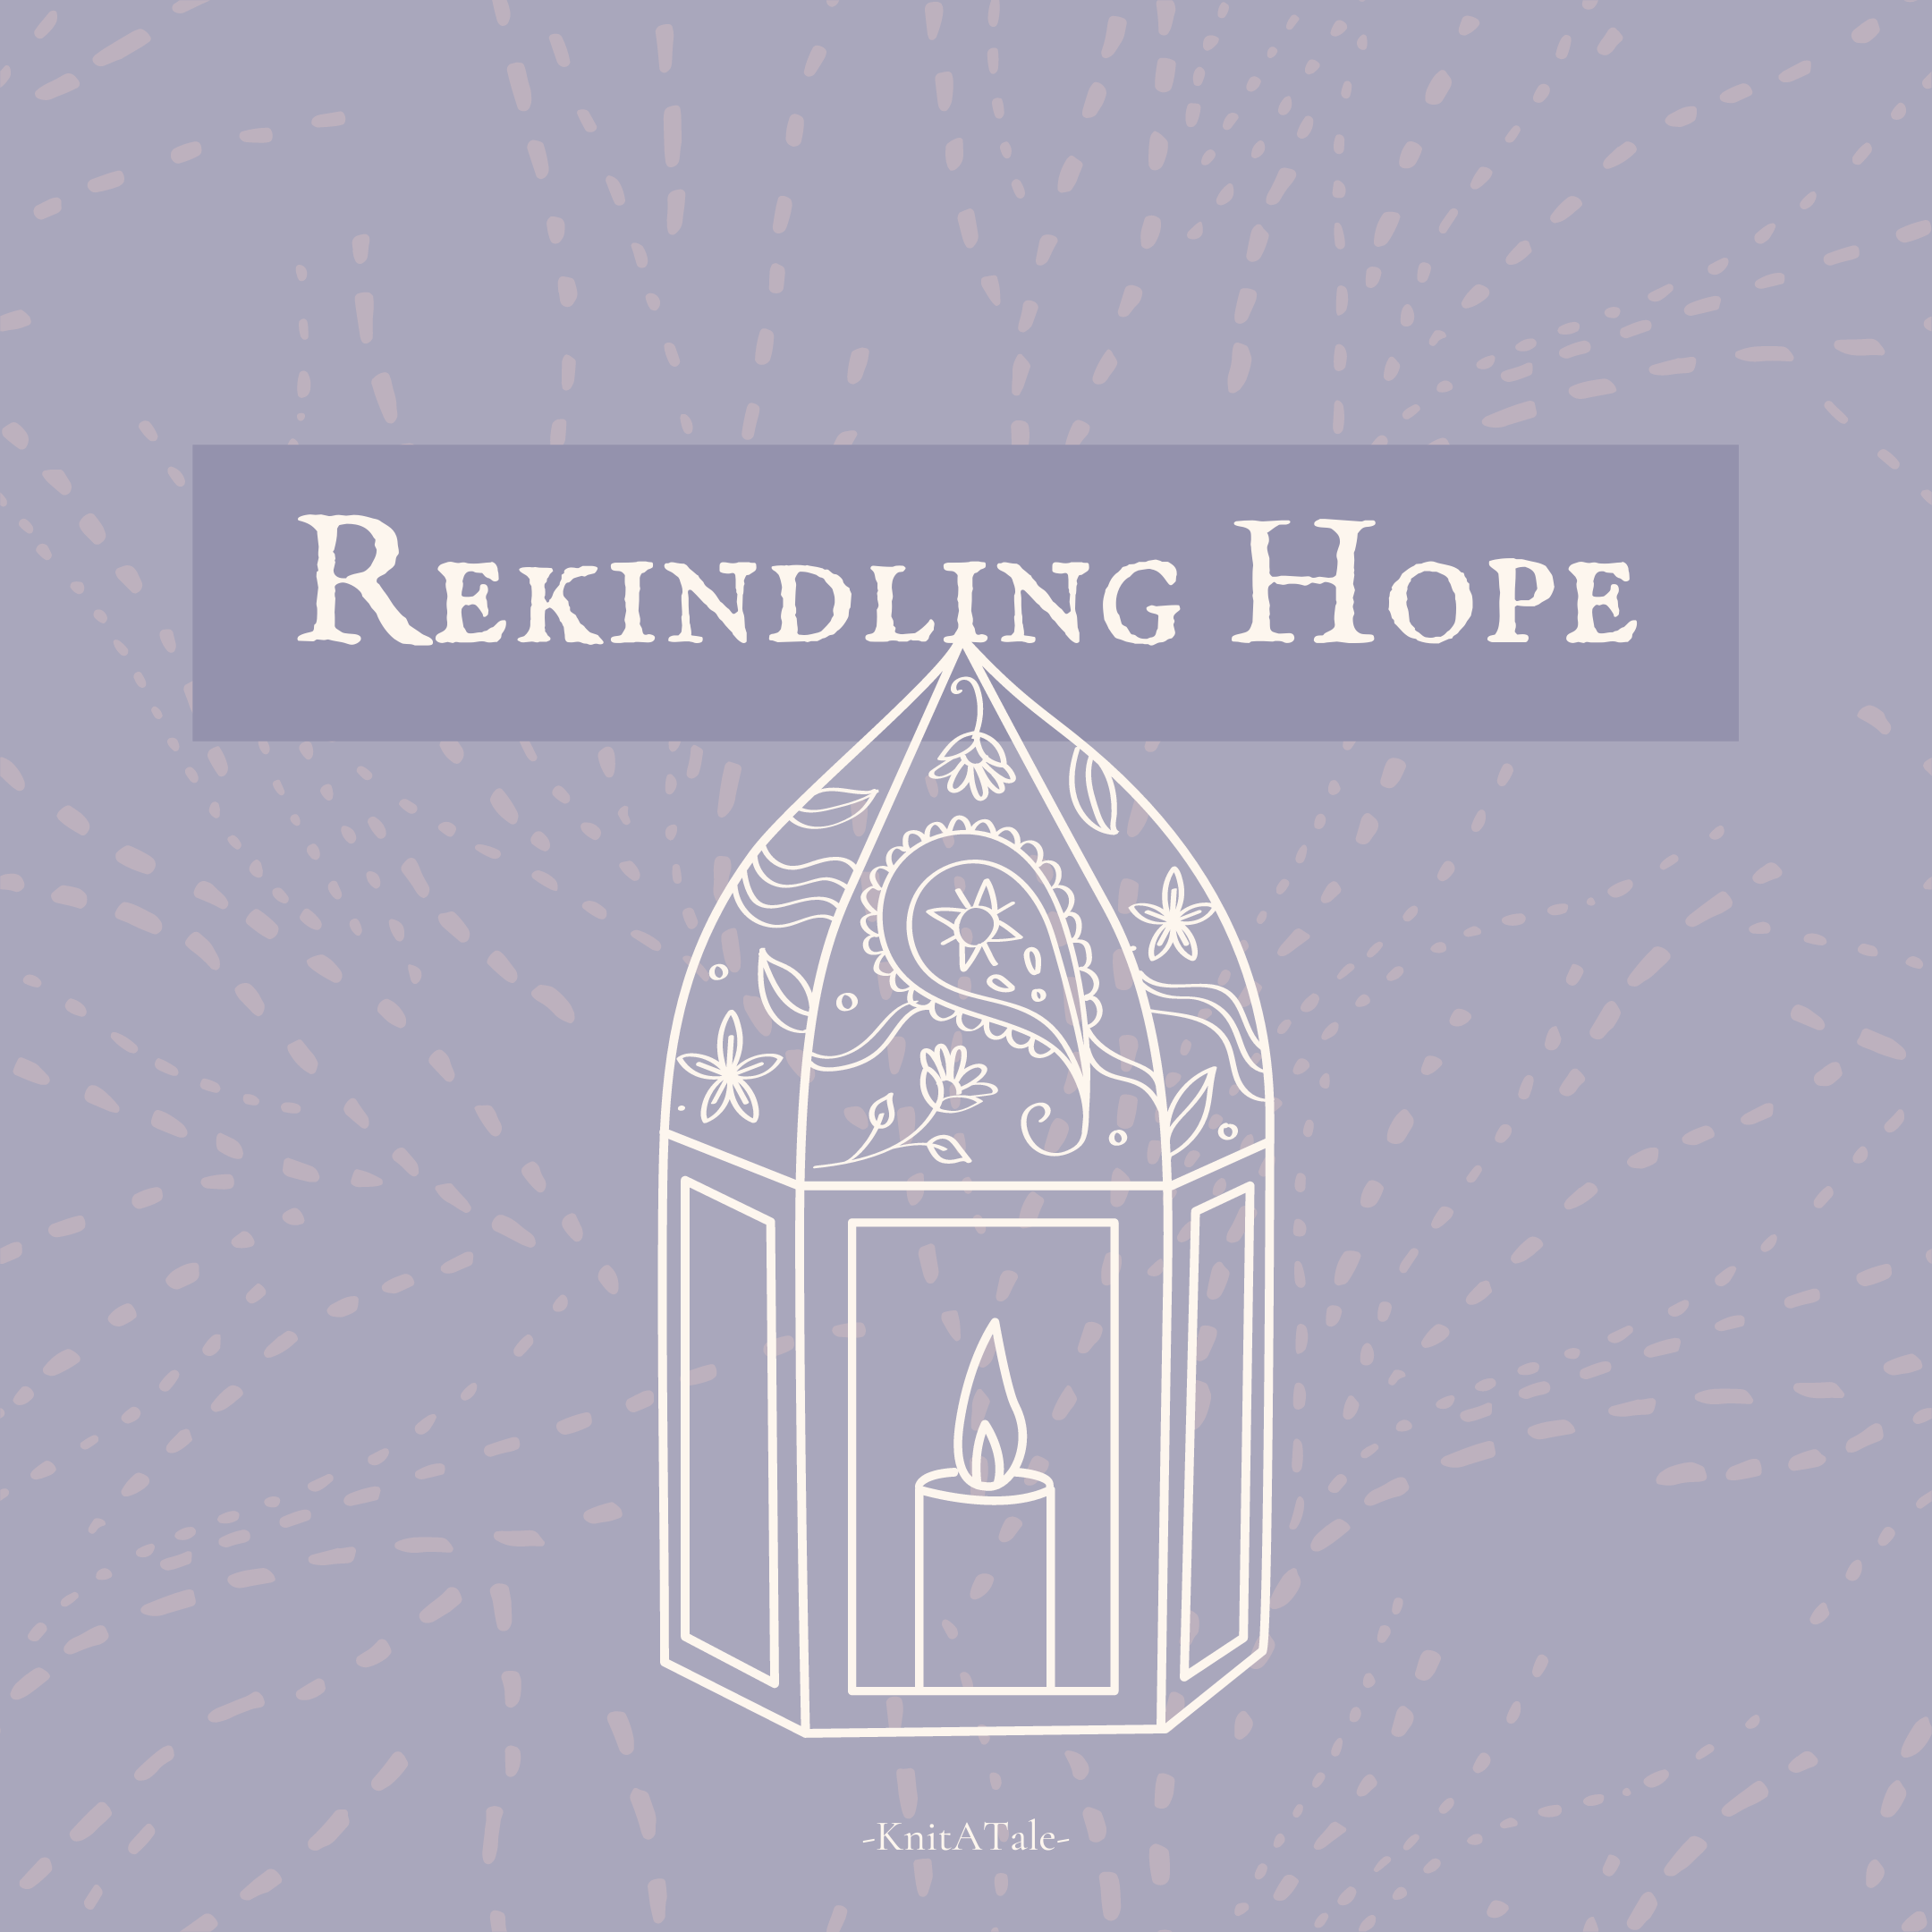 Rekindling Hope